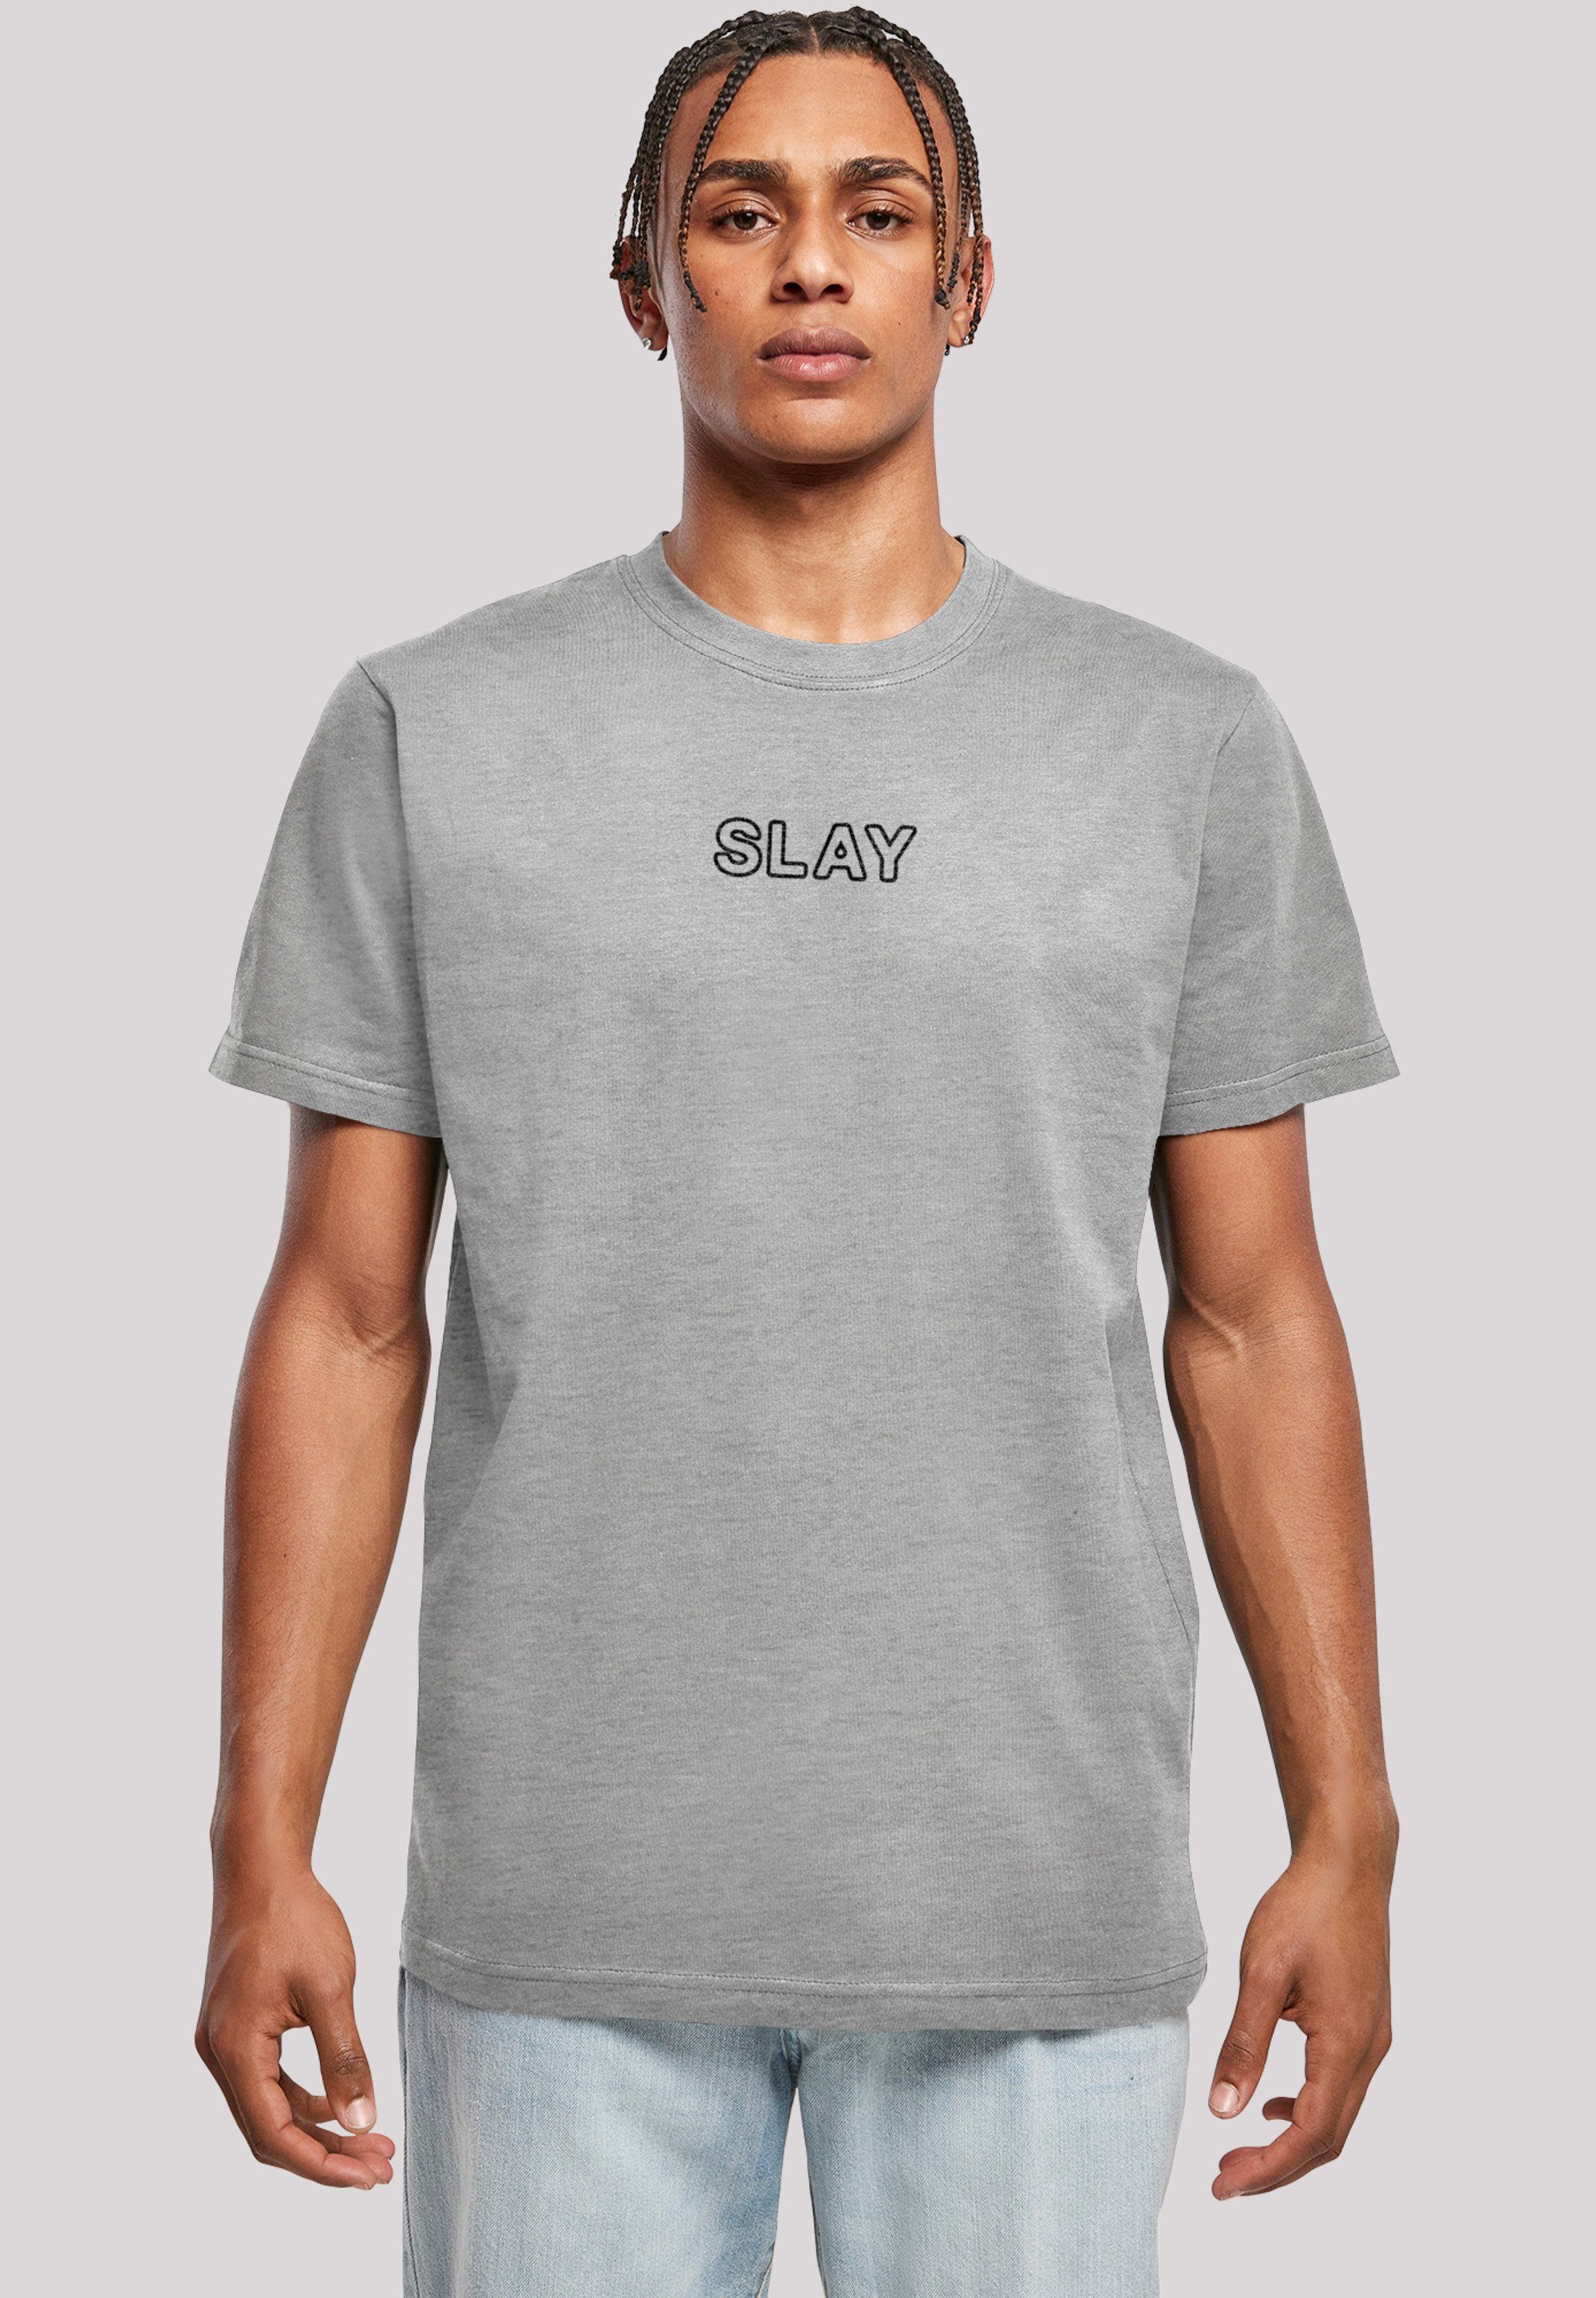 slang Jugendwort 2022, Slay F4NT4STIC T-Shirt